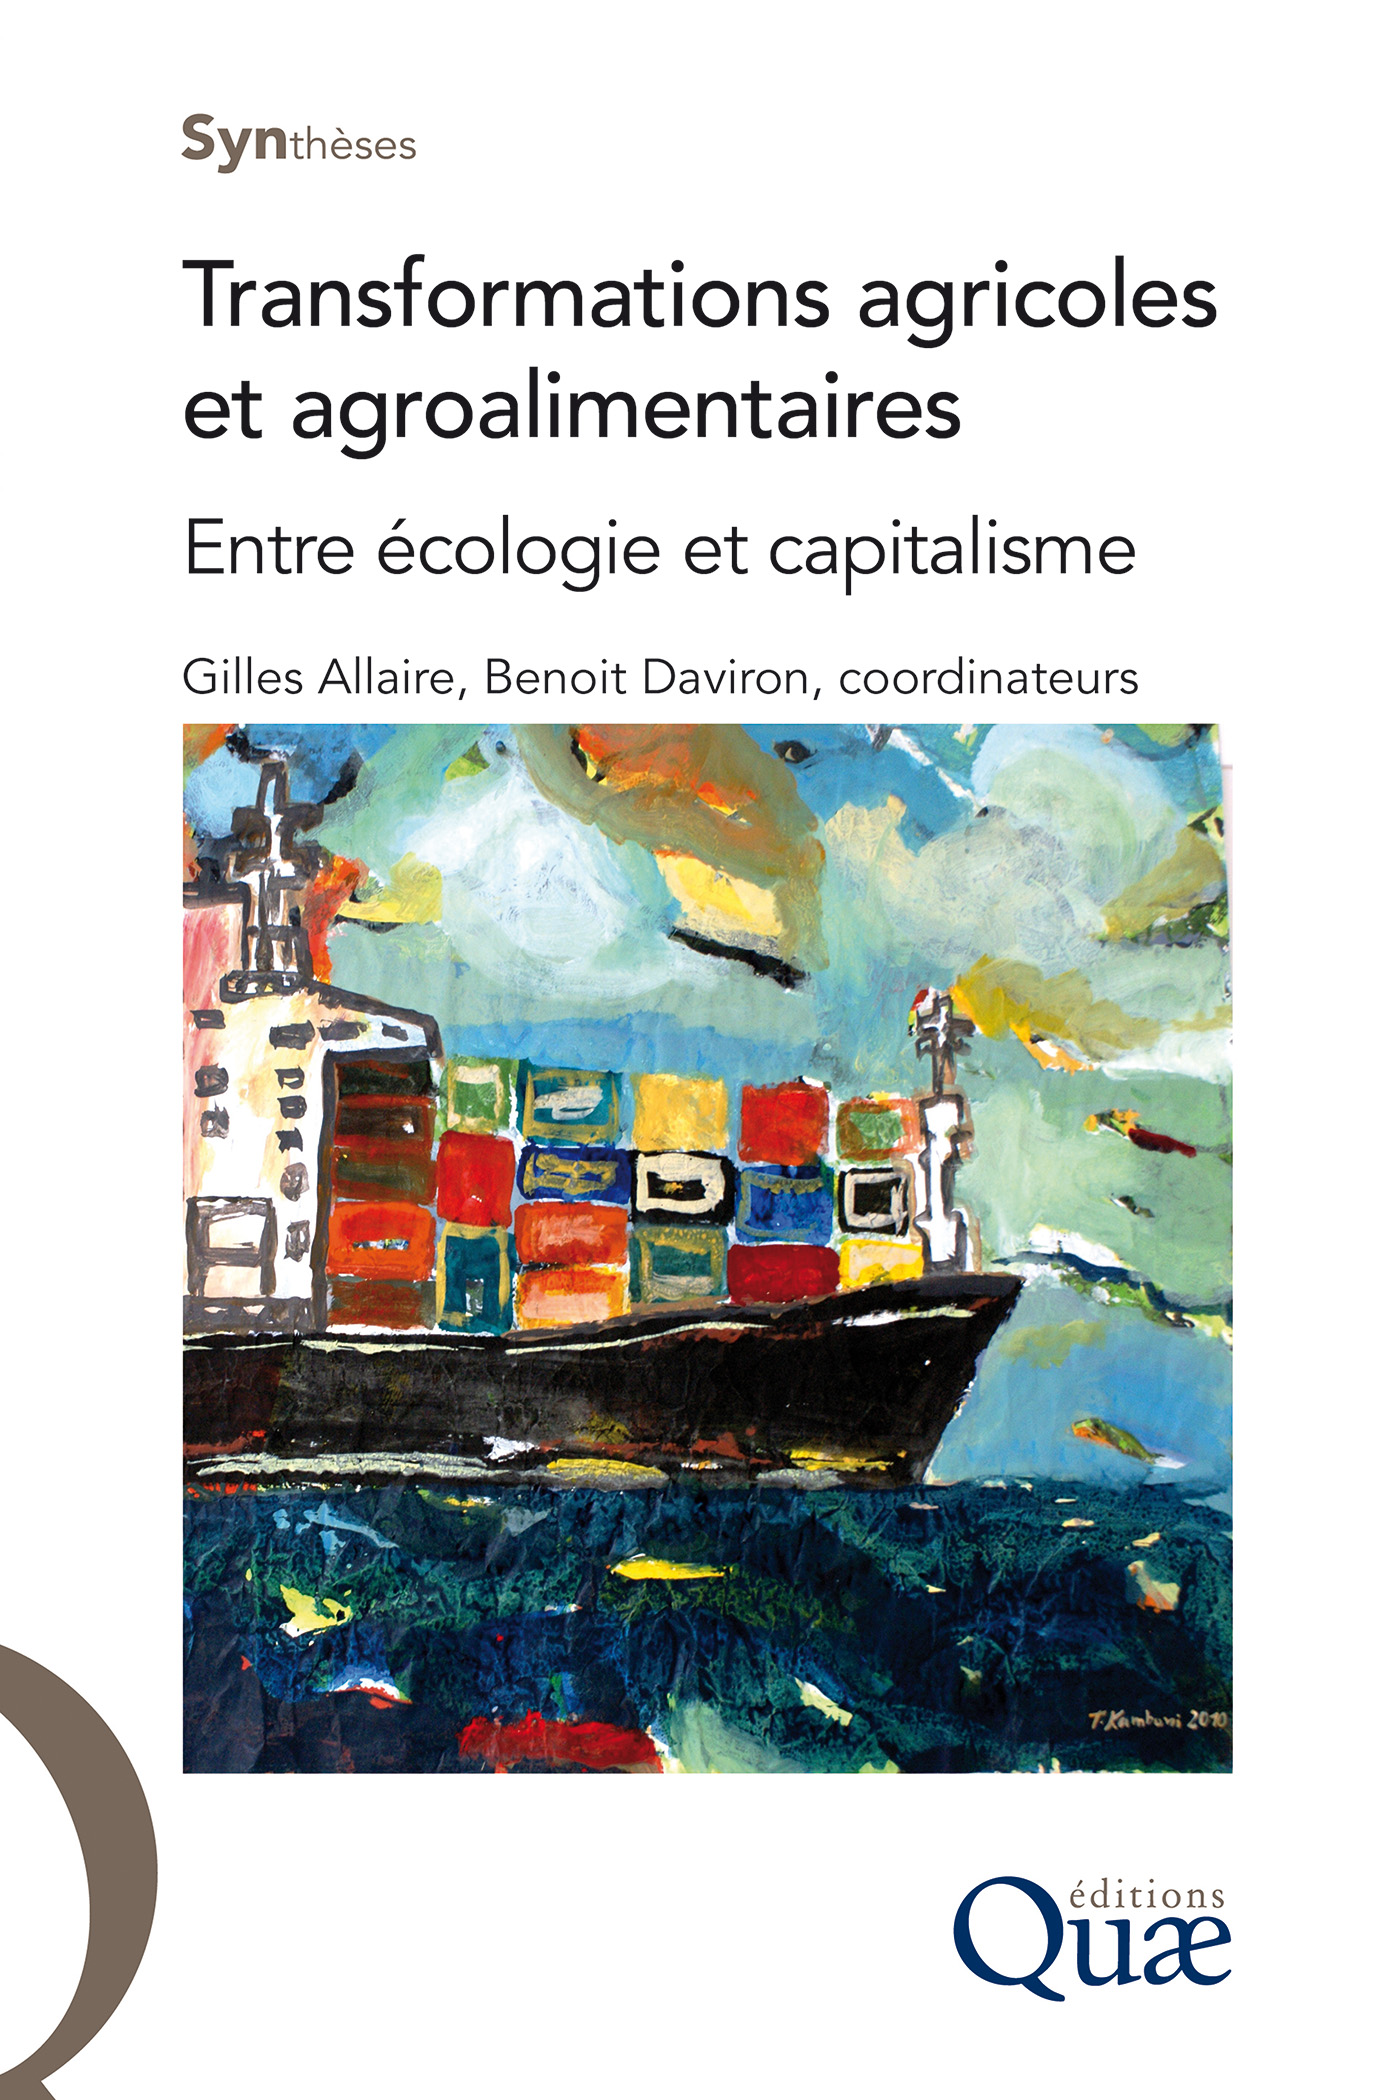 Transformations agricoles et agroalimentaires De Gilles Allaire et Benoît Daviron - Quæ